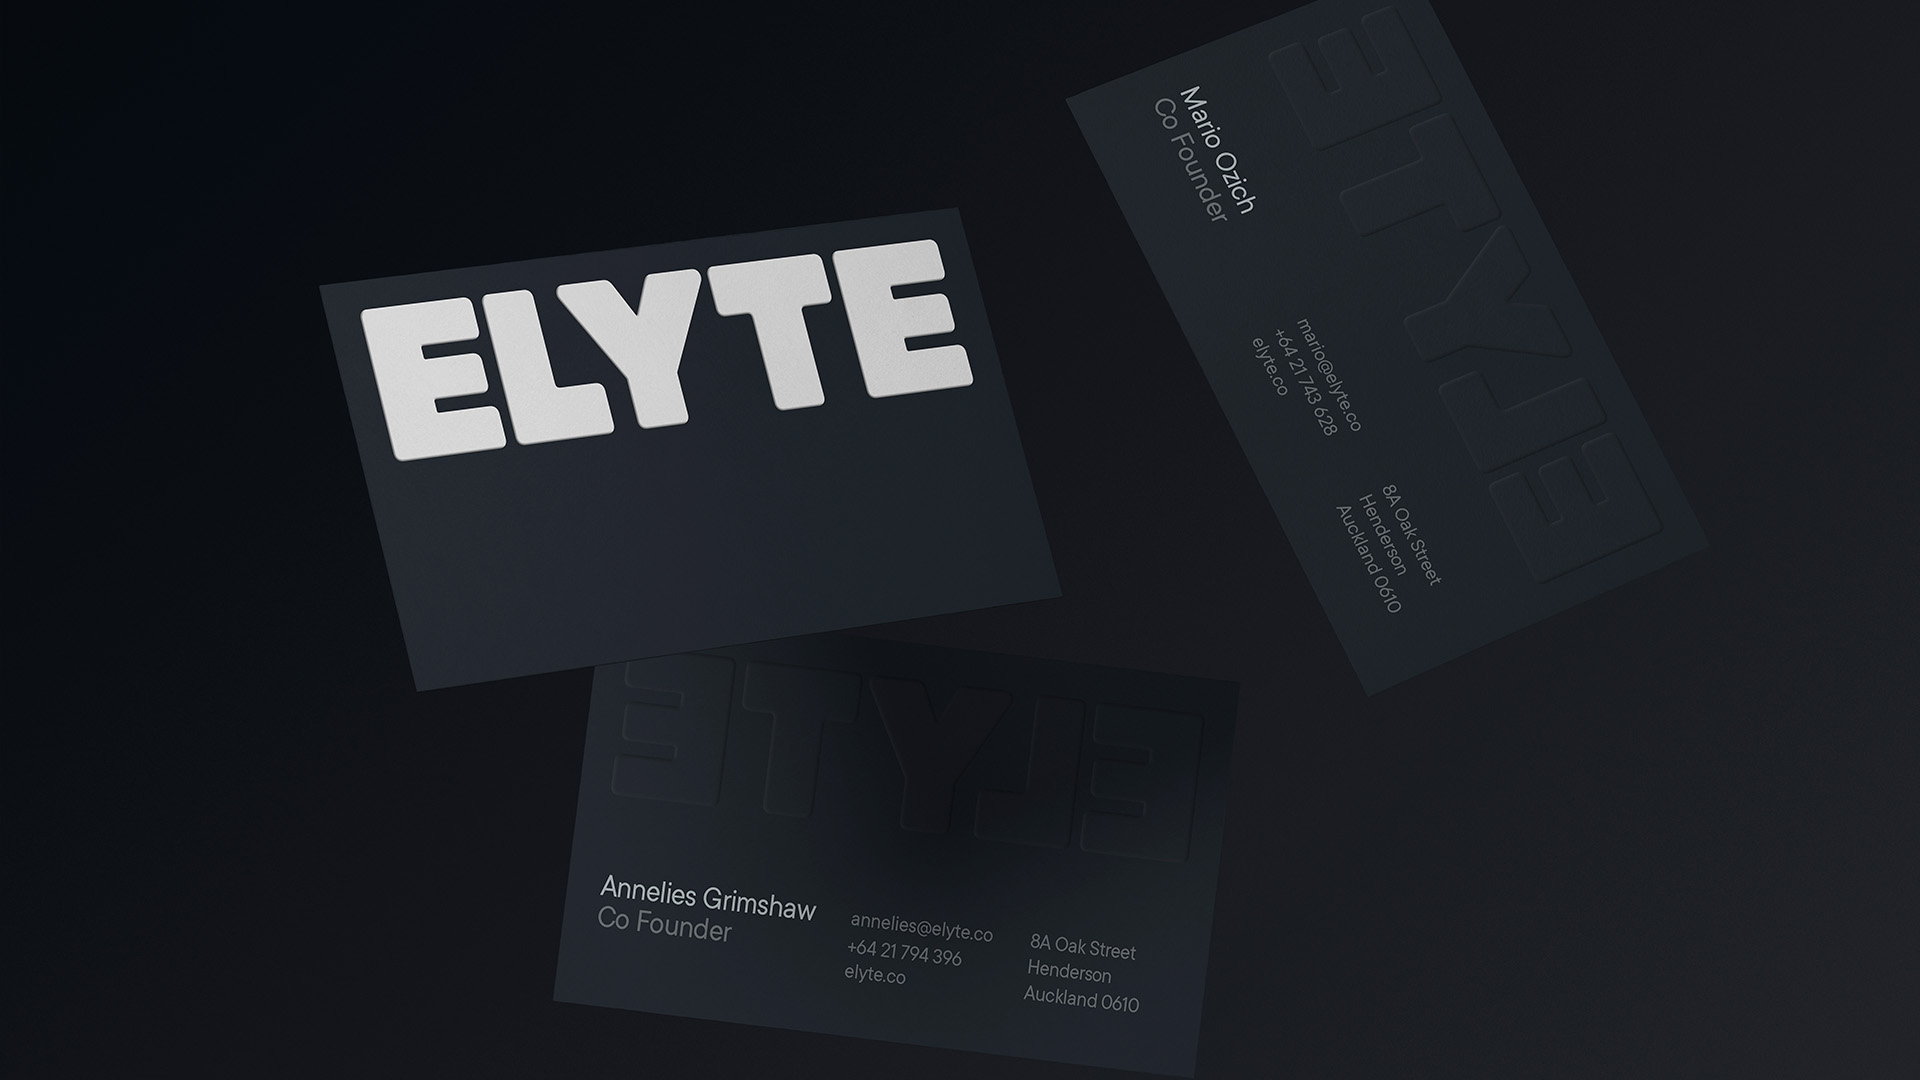 Elyte branded business cards